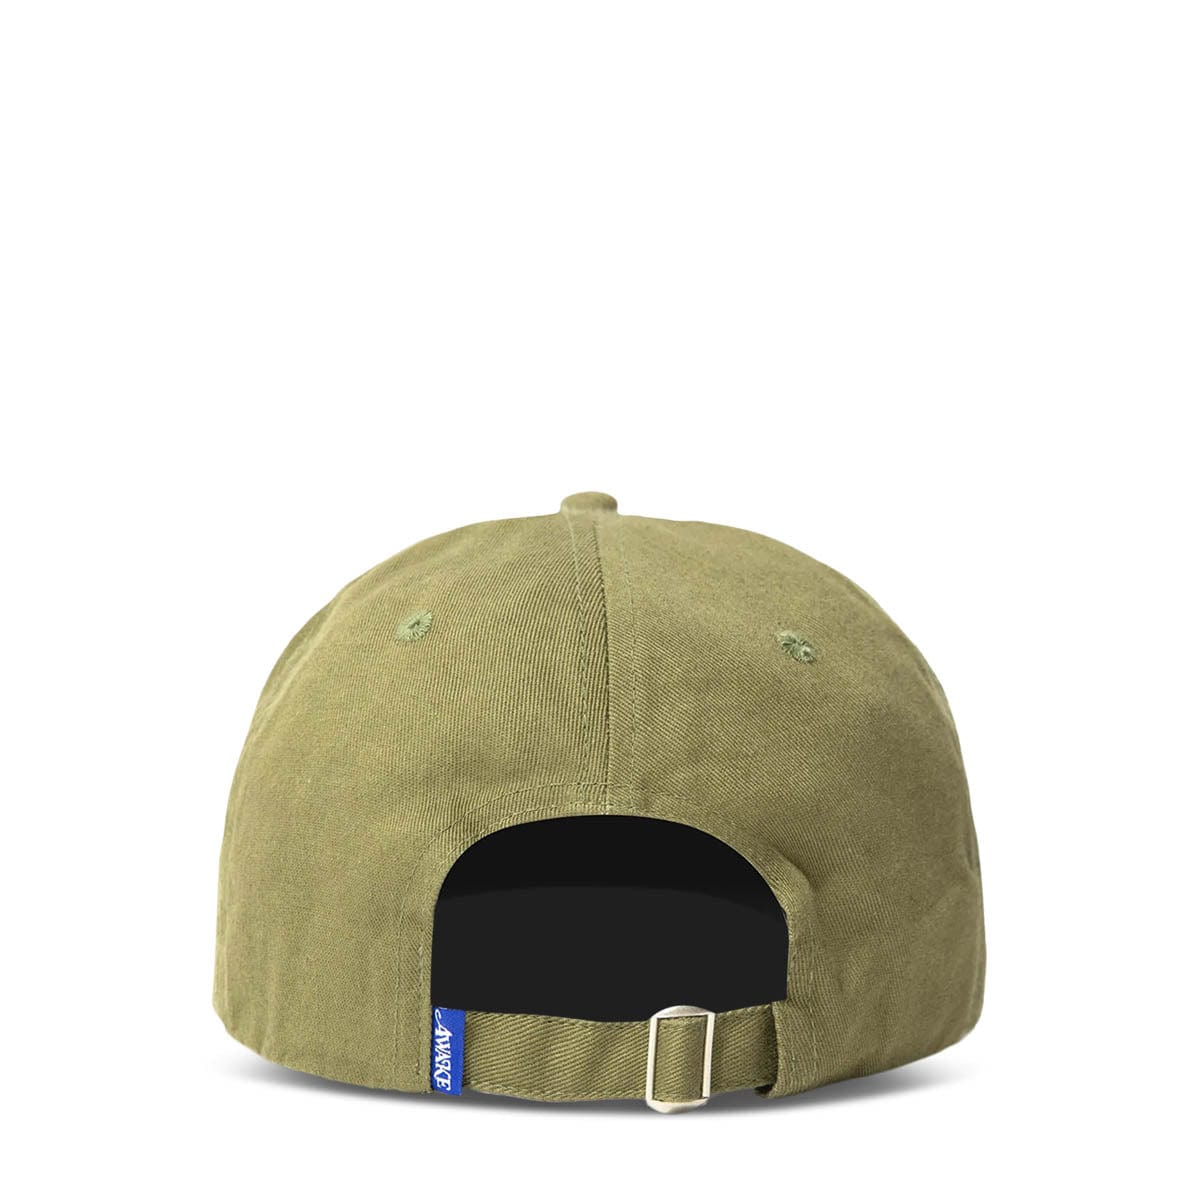 Awake NY Headwear OLIVE / O/S MILITARY LOGO 6-PANEL HAT